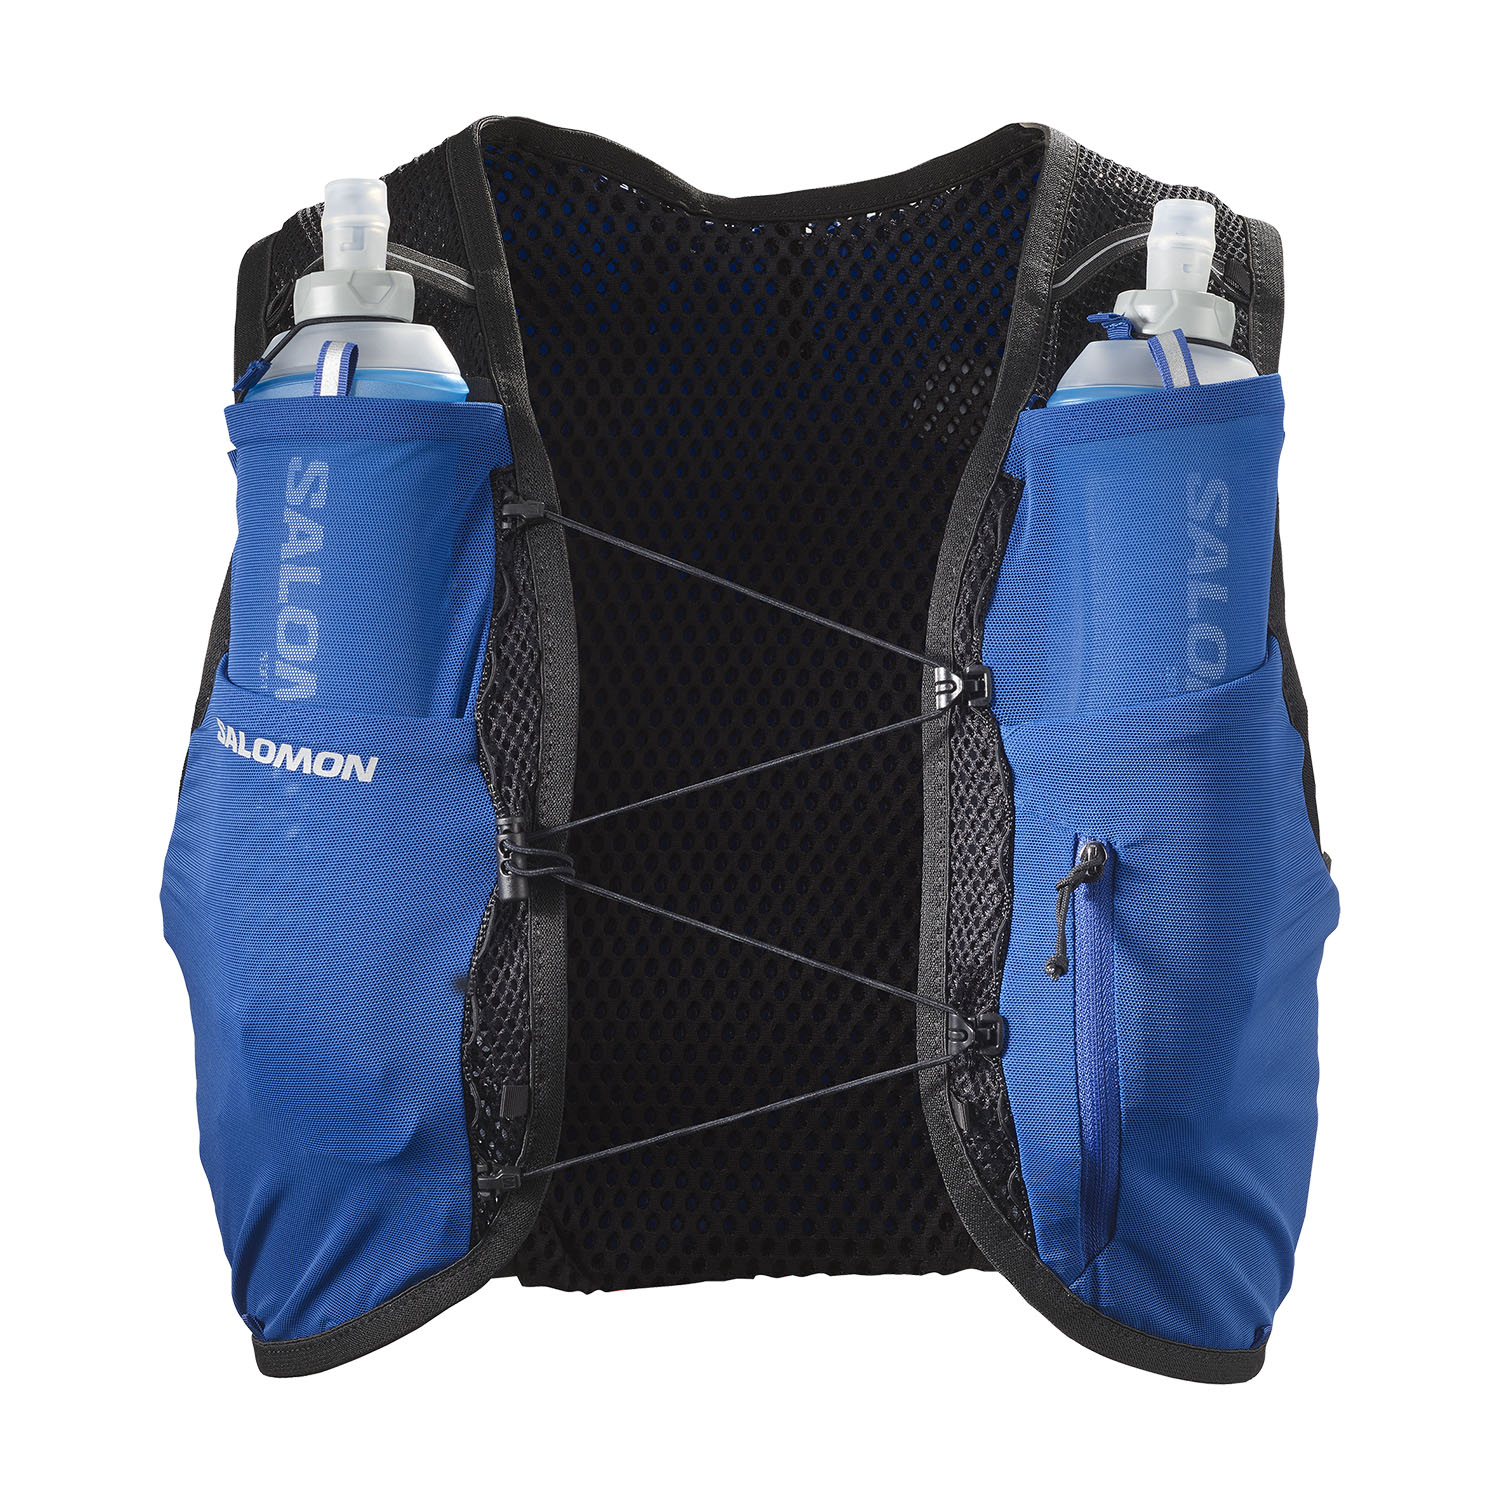 Salomon Active Skin 8 Set Backpack - Surf The Web/Black